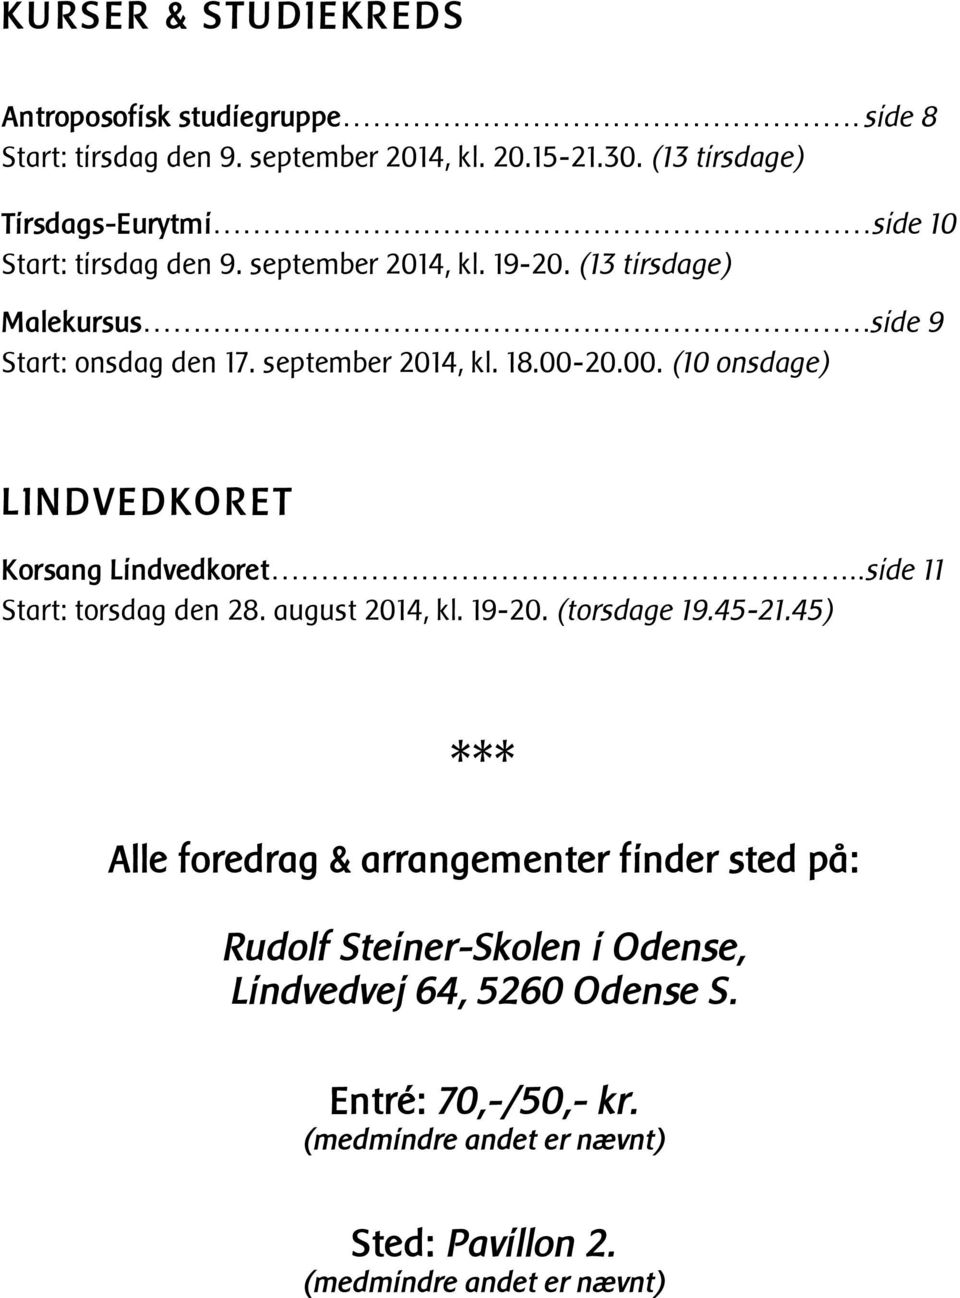 september 2014, kl. 18.00-20.00. (10 onsdage) LINDVEDKORET Korsang Lindvedkoret...side 11 Start: torsdag den 28. august 2014, kl. 19-20. (torsdage 19.